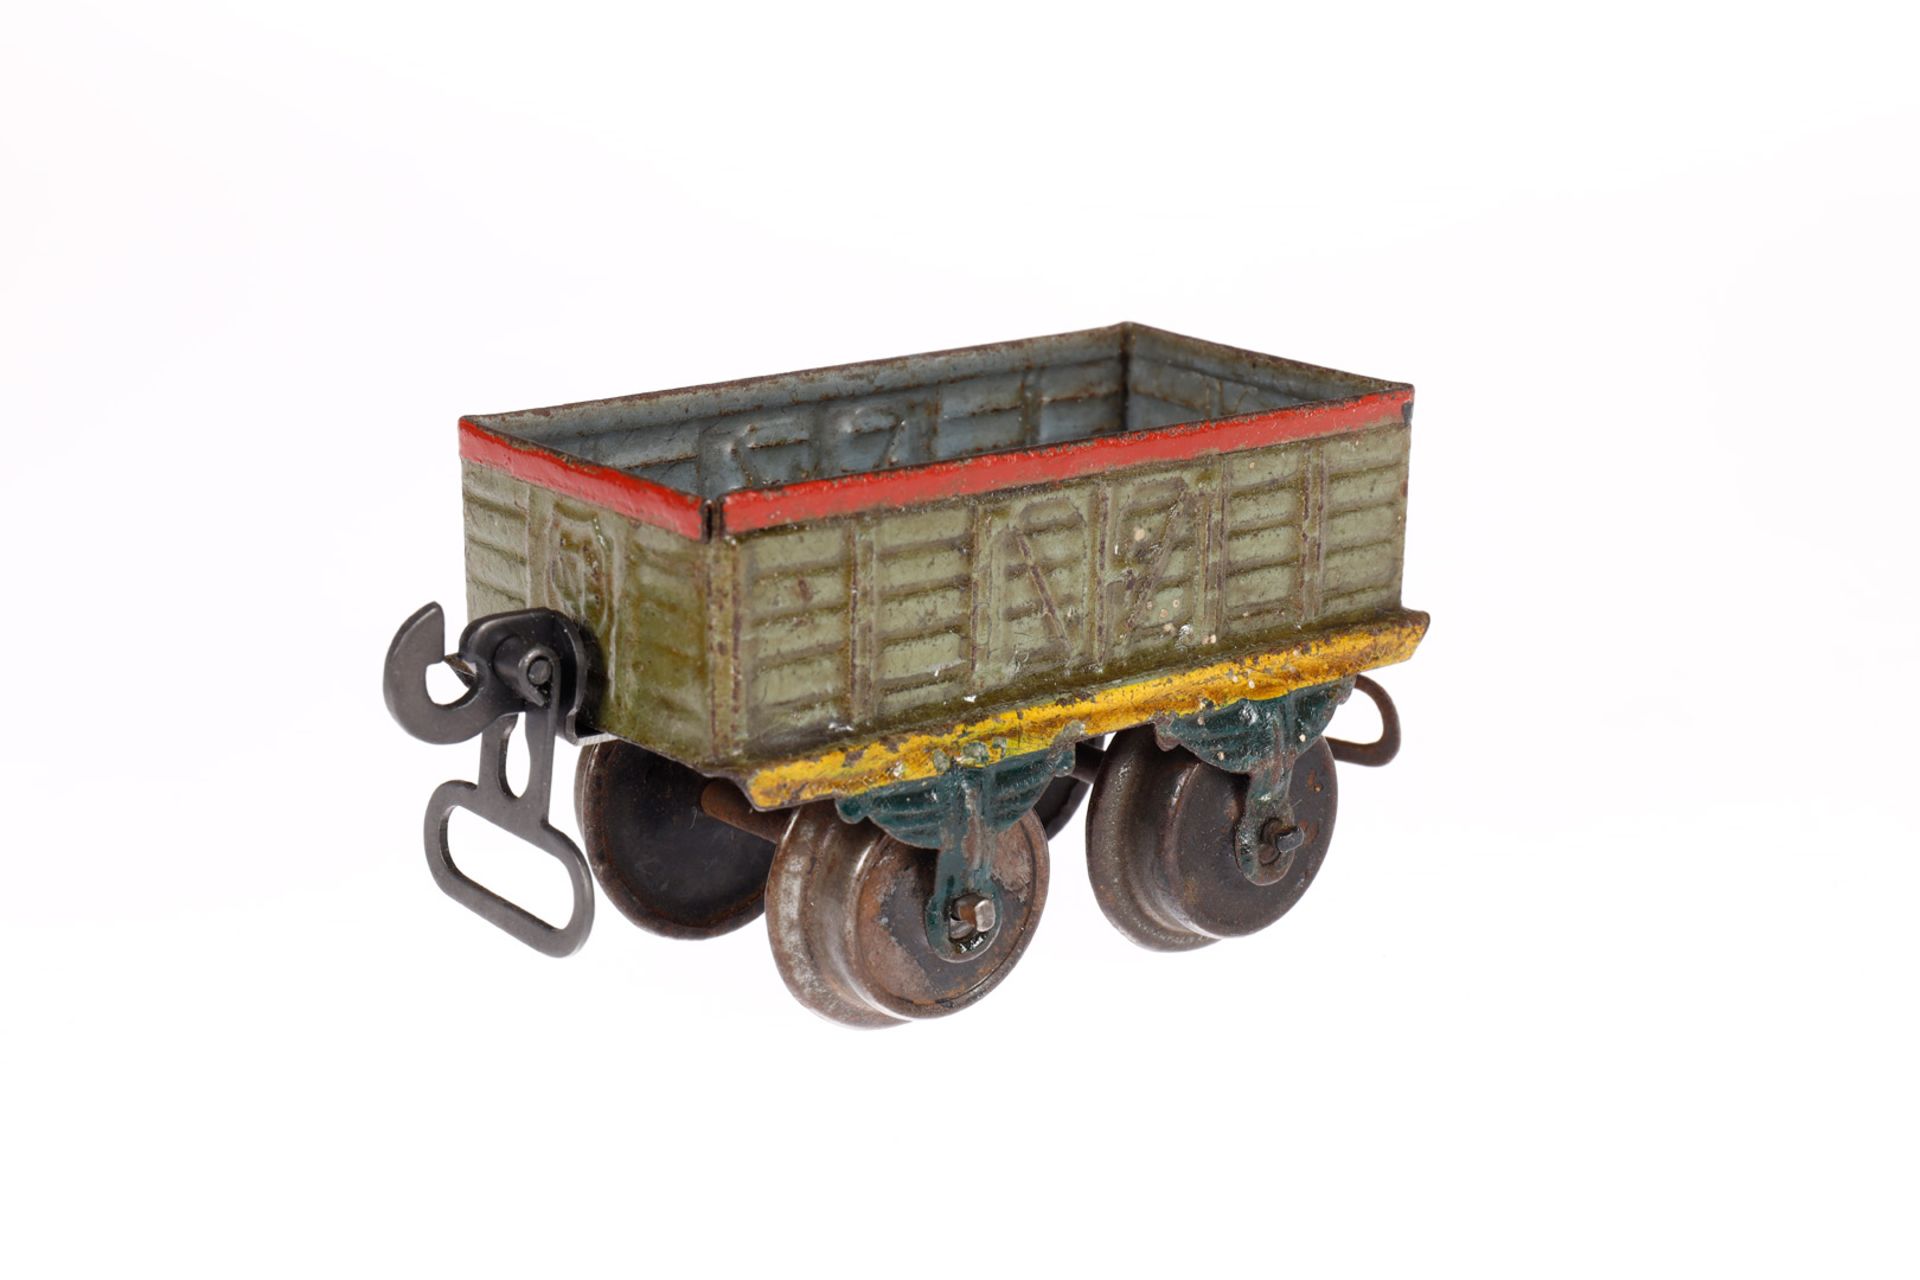 Märklin offener Güterwagen 1816, Spur 0, uralt, HL, mit Bügelkupplungen, LS und gealterter Lack, L - Bild 3 aus 4